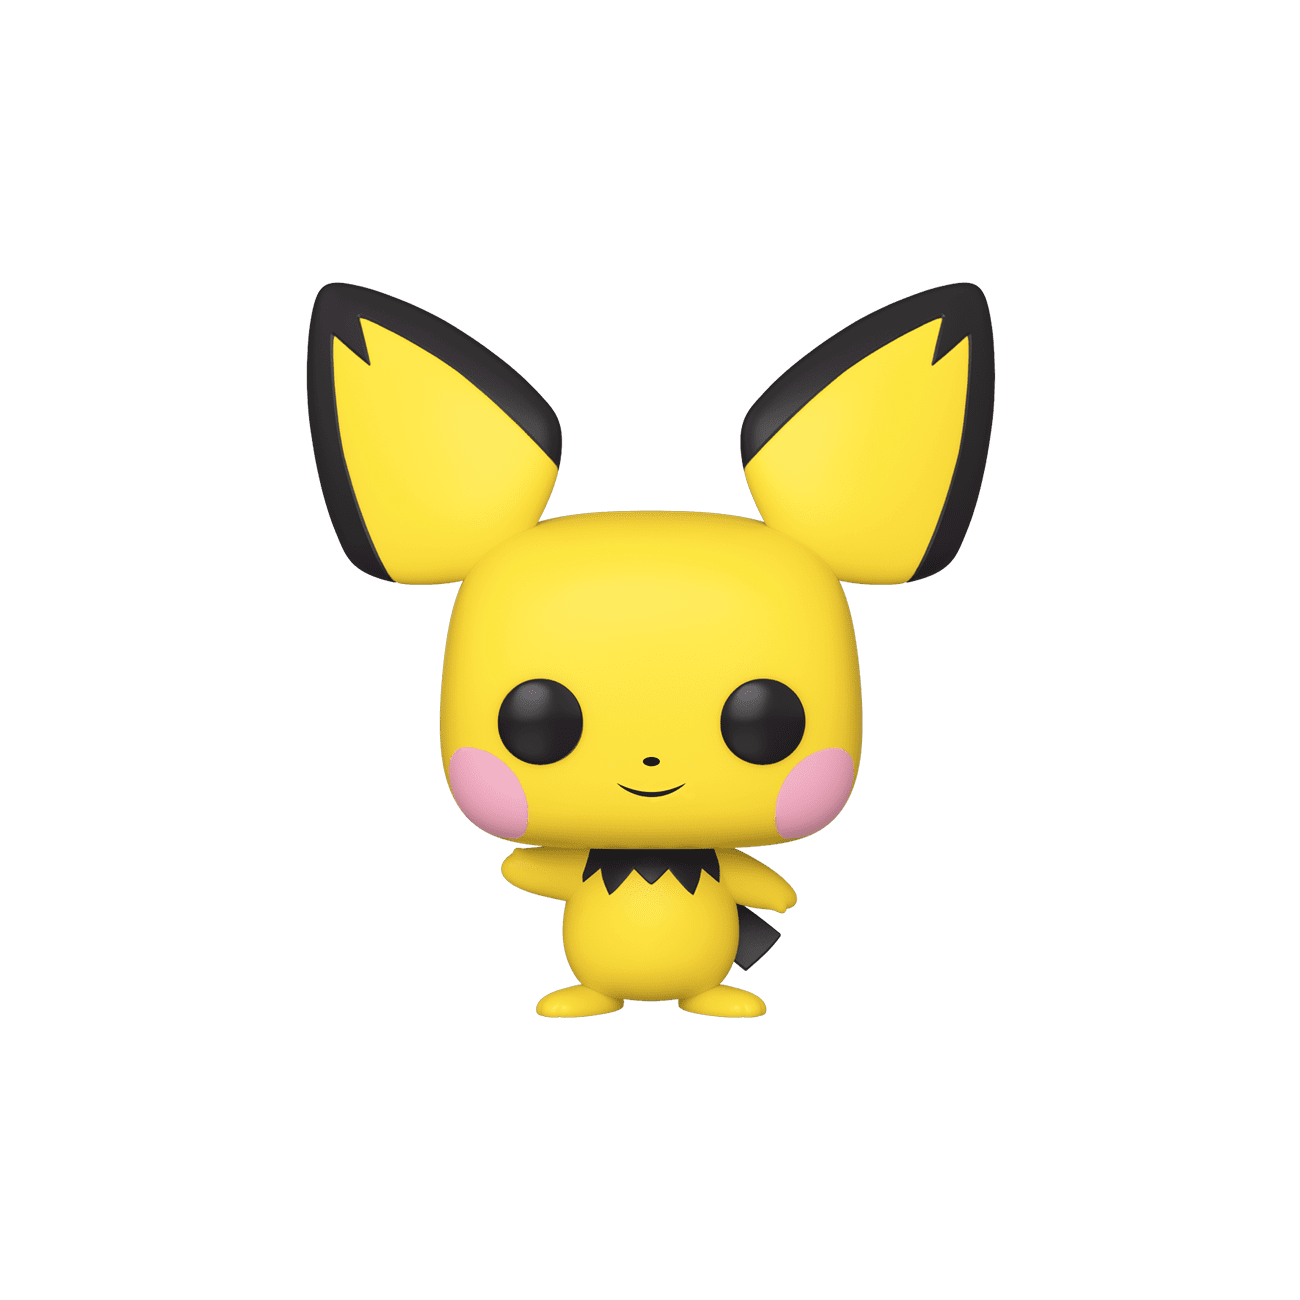 Figurine Pokémon - POP n°579 - Pichu